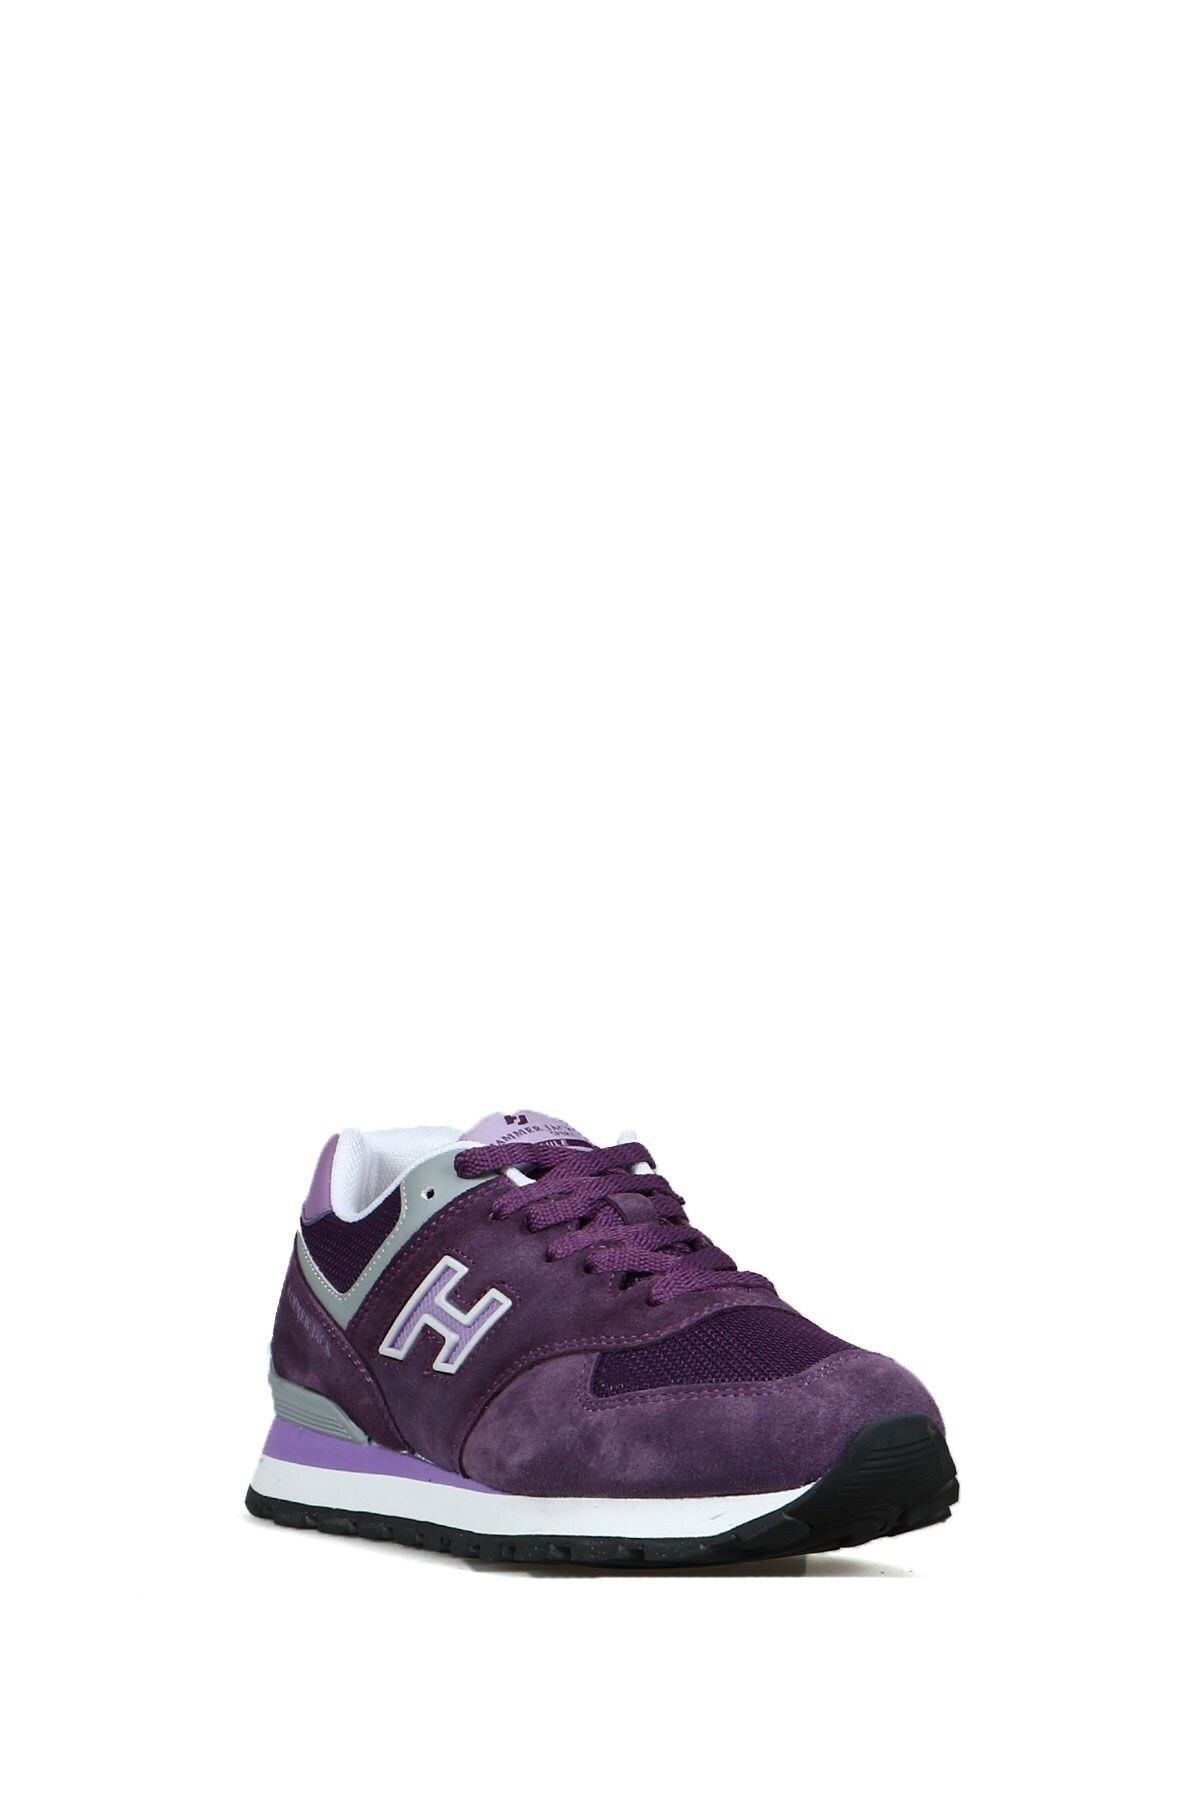 Hammer Jack Chıle 10219253-g Lazer-lila Sneaker Kadın Hakiki Deri Spor Ayakkabısı